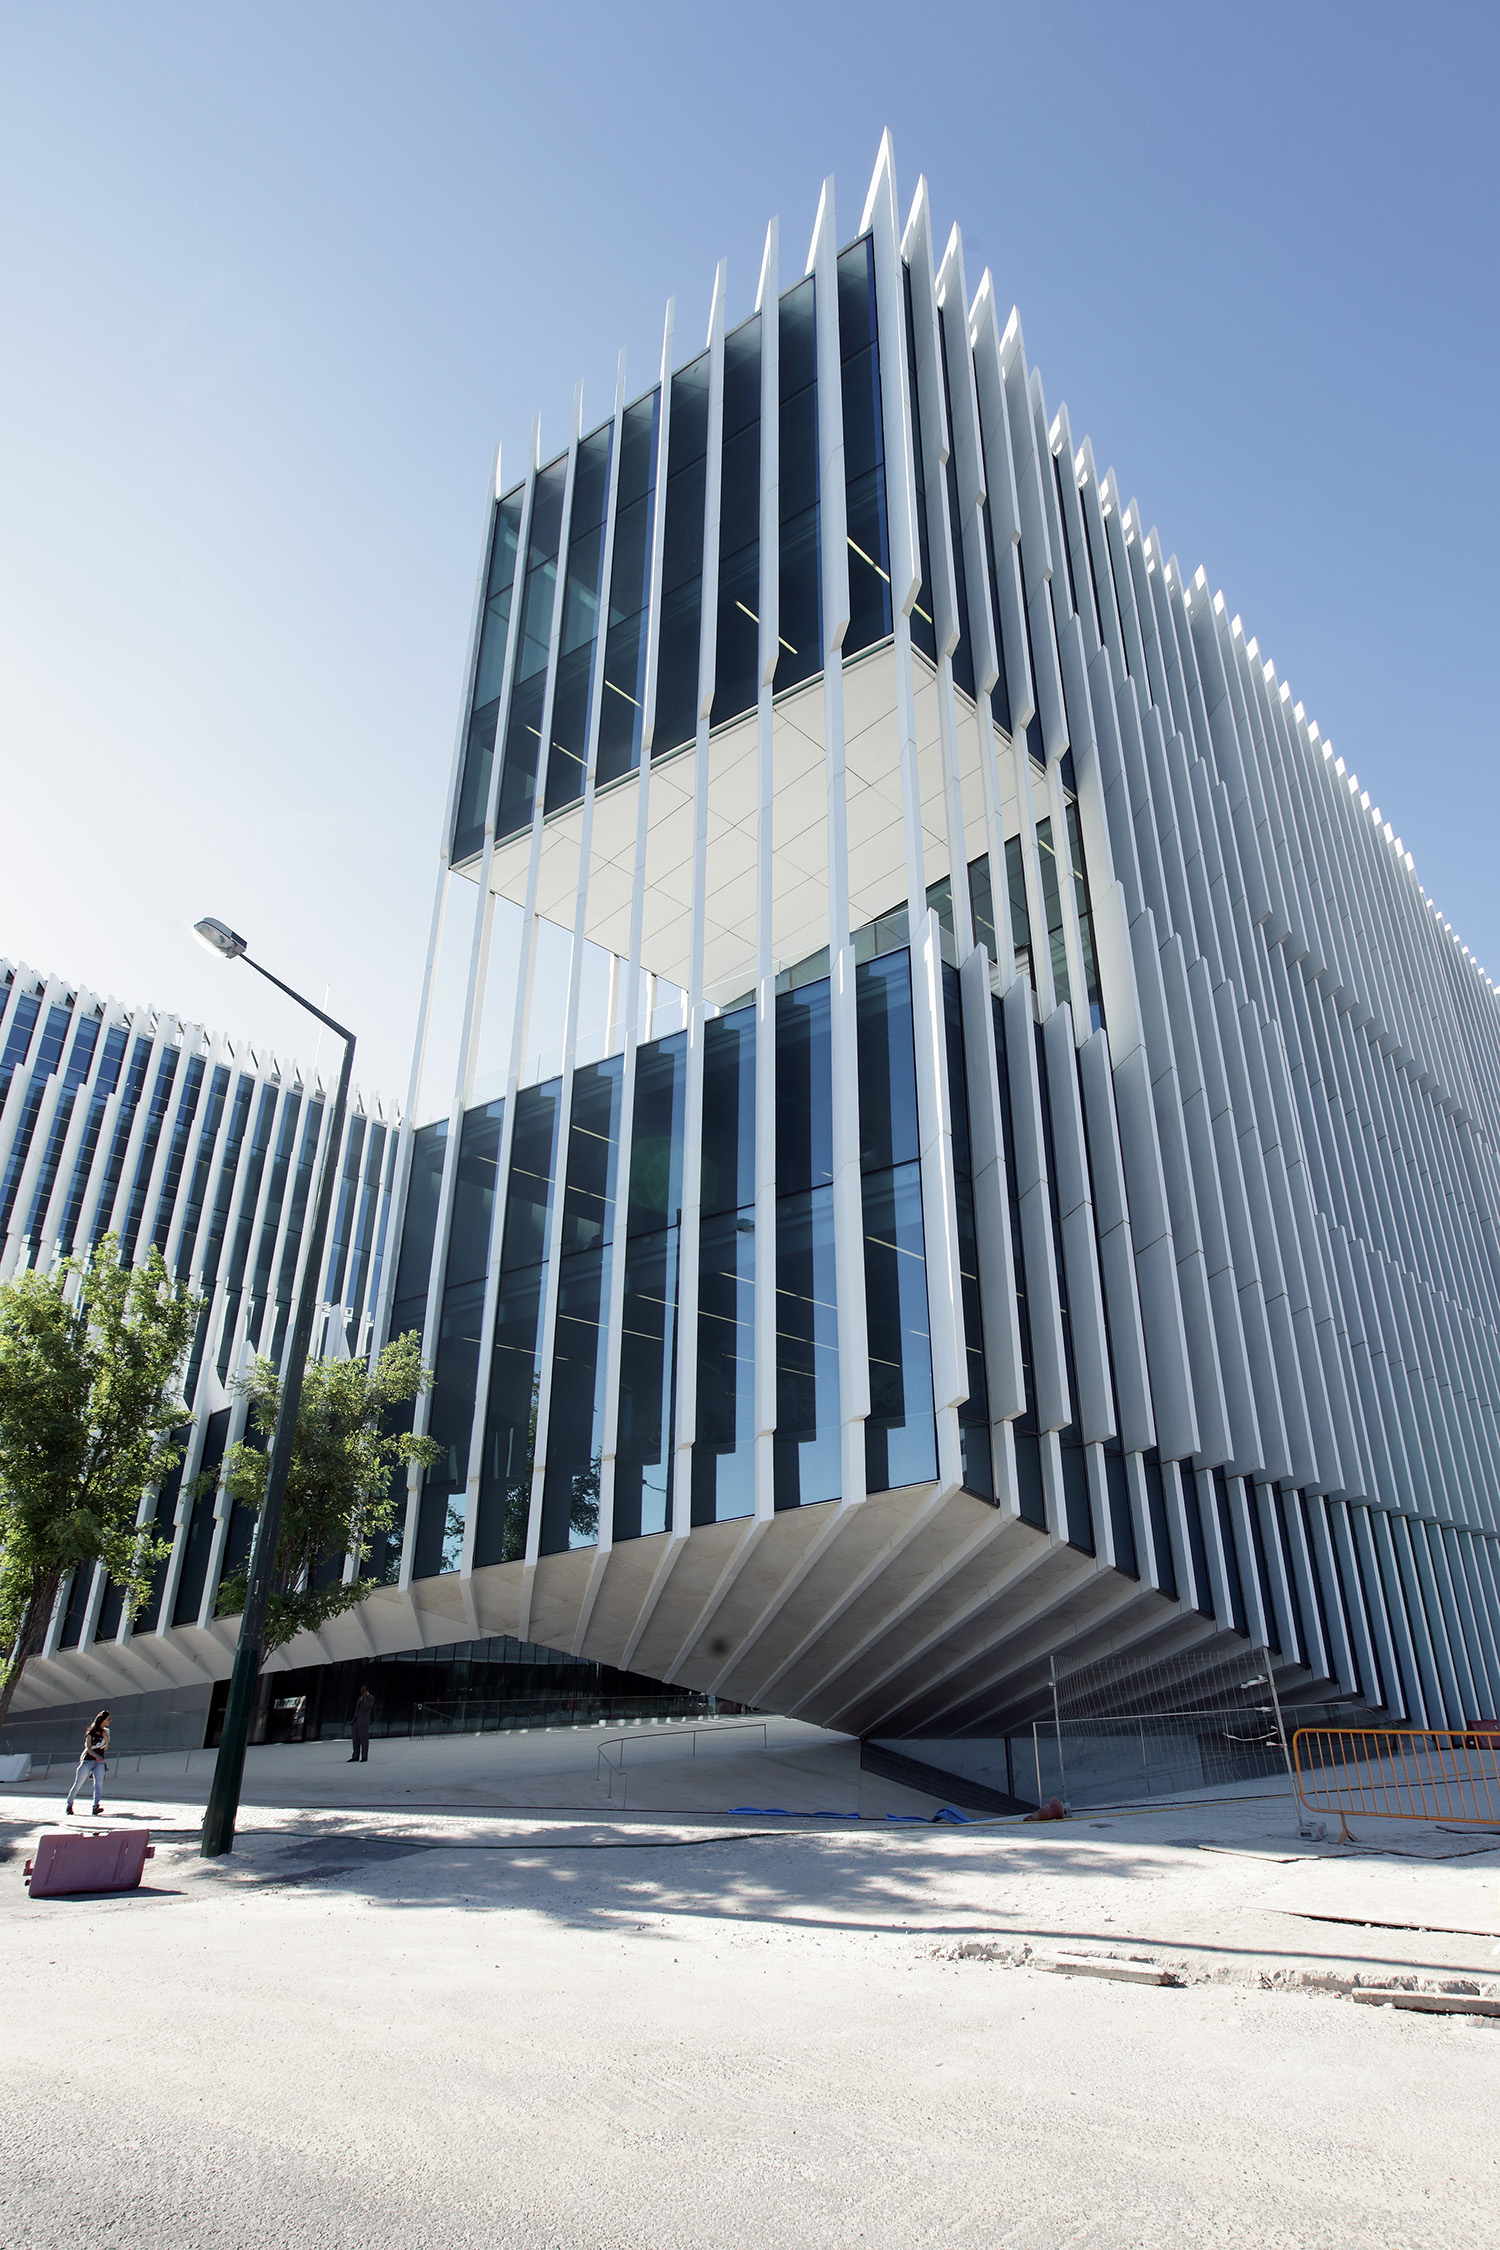 EDP headquarters
Aires Mateus, 2015
Lisbon, Portugal